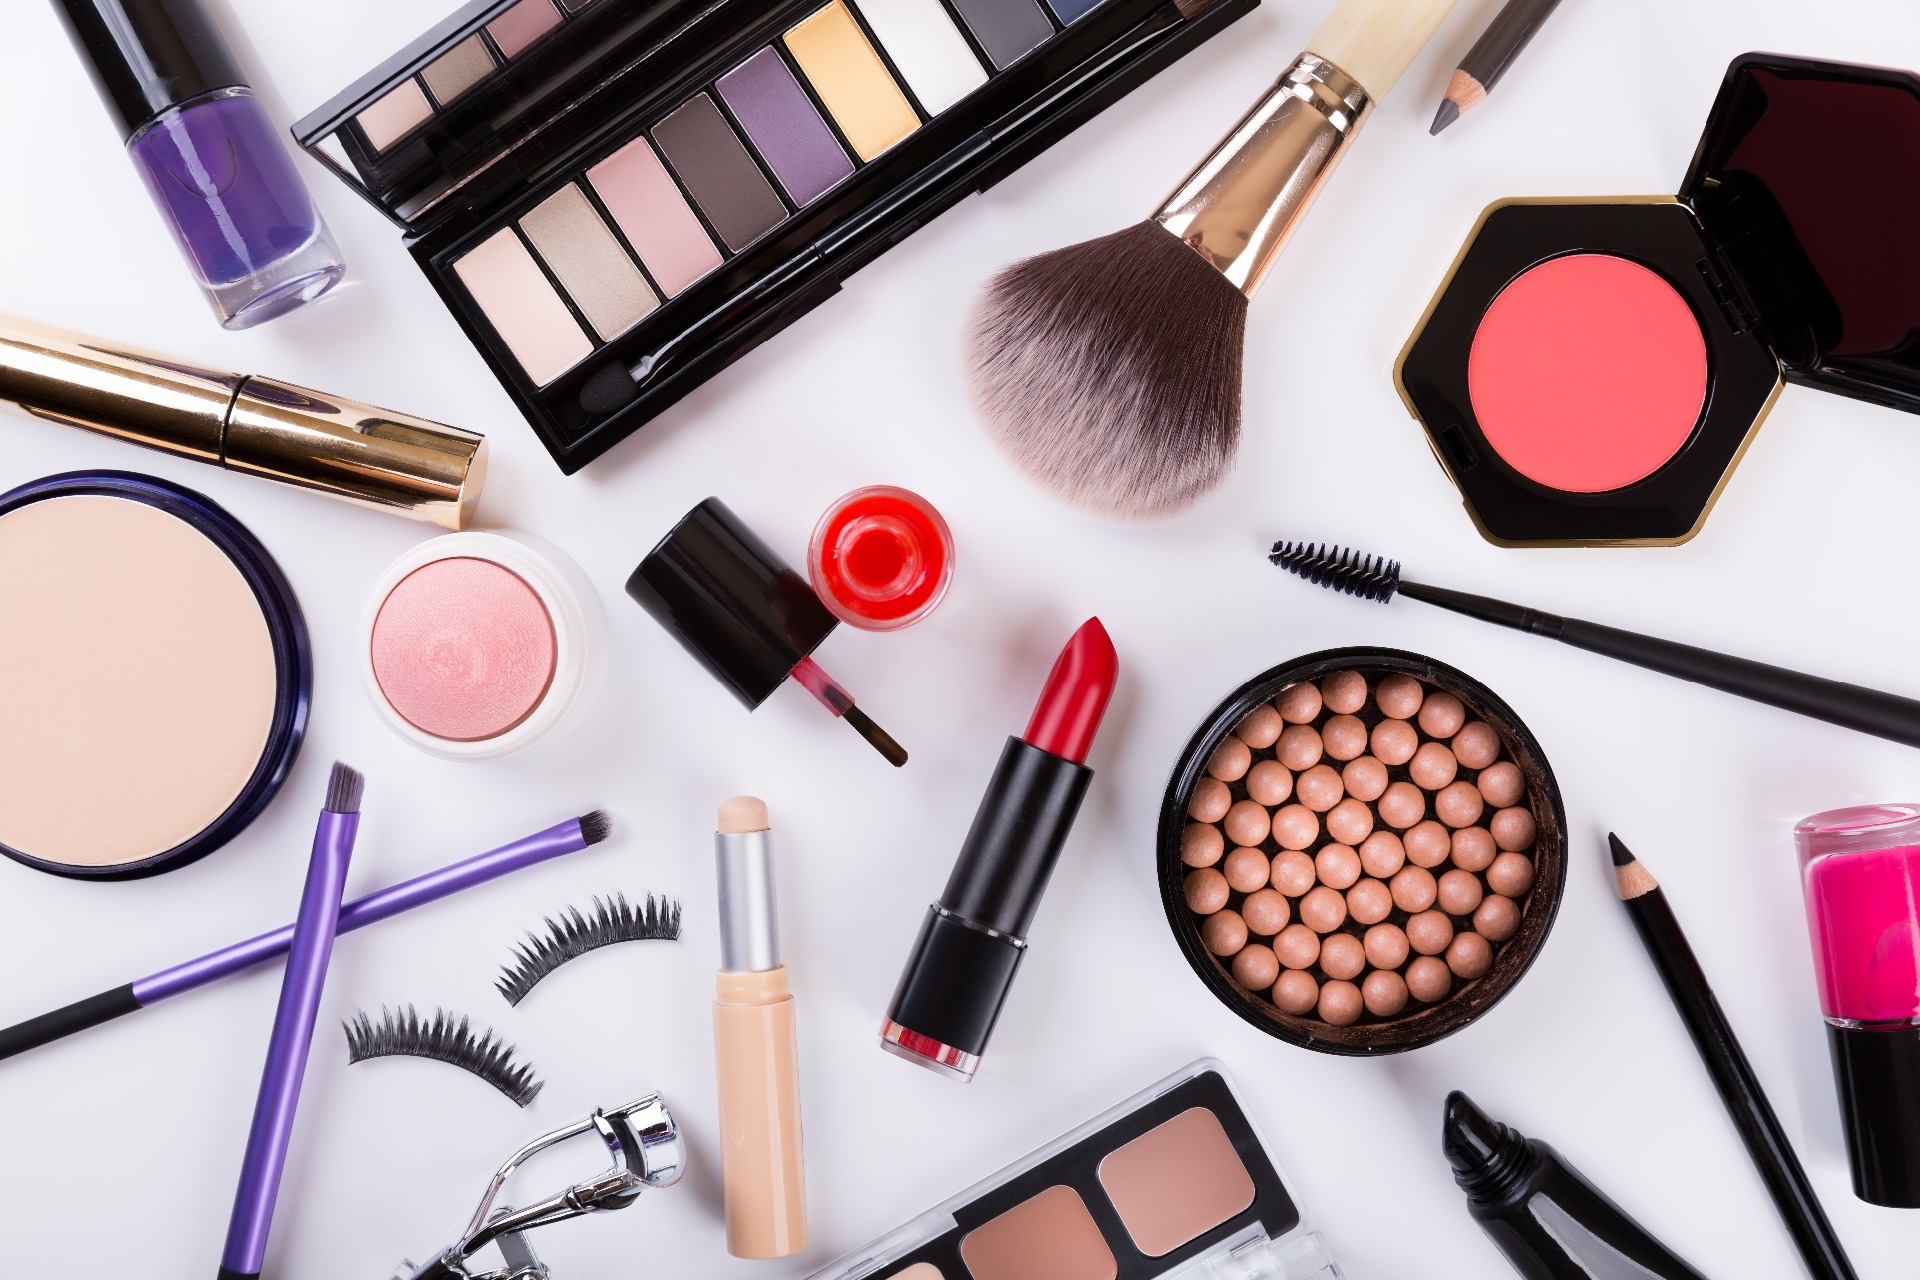 A variety of makeup, including blush, lipstick, highlighter balls, eyelashes, eyeshadow, nailpolish, mascara and eyeliner.